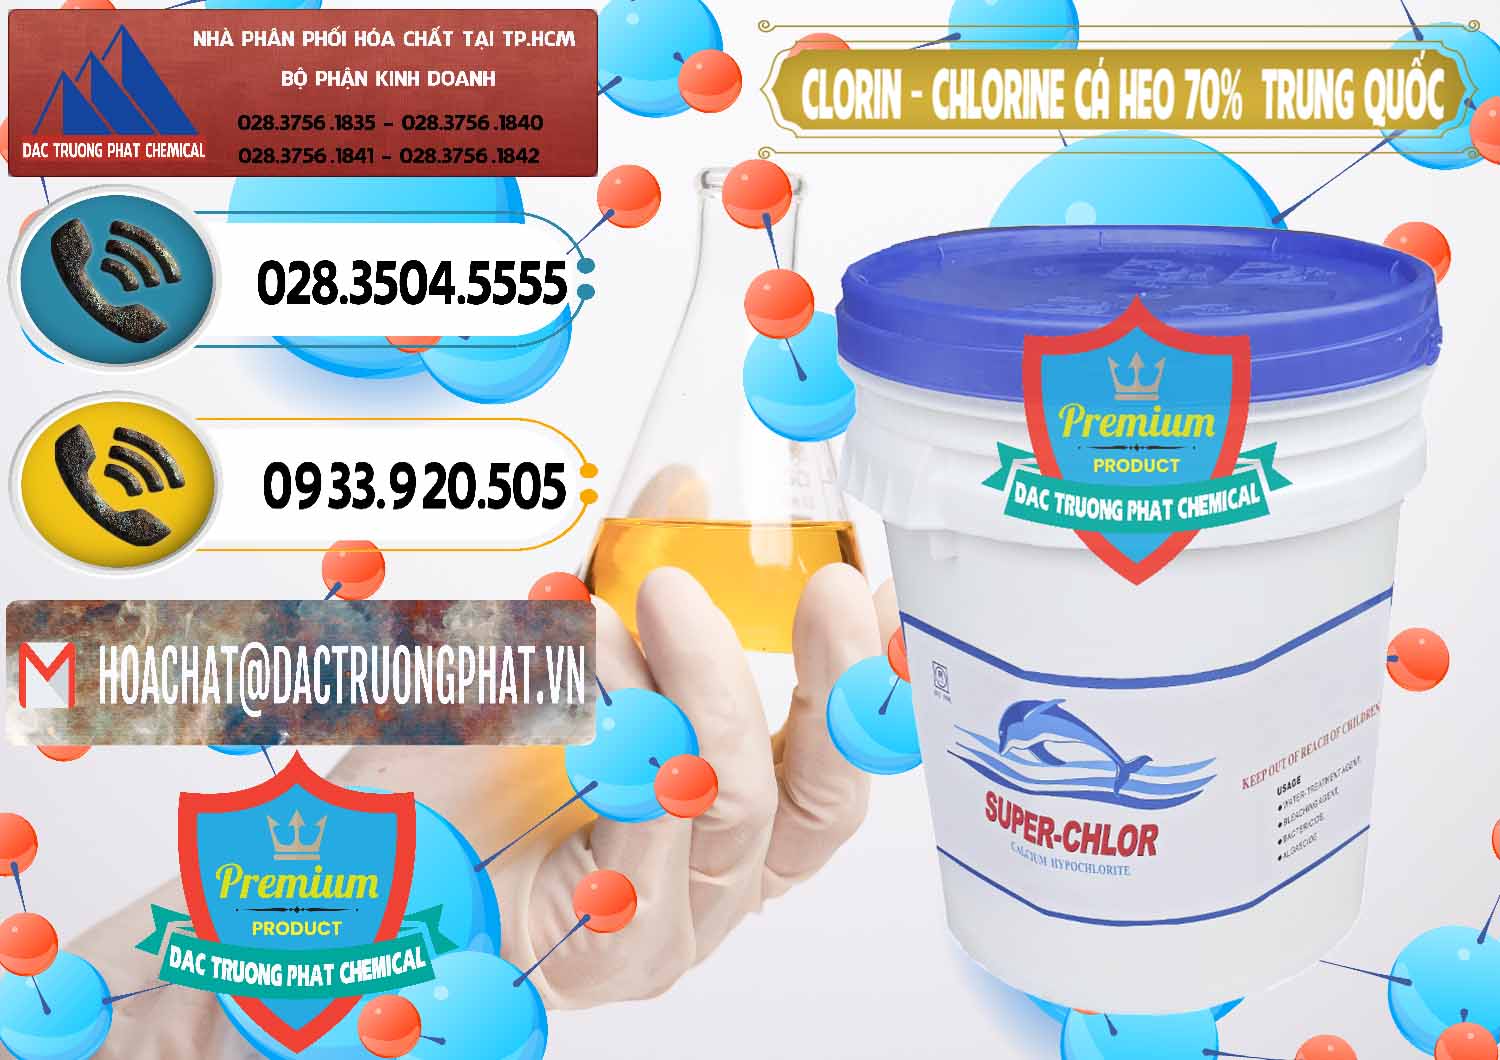 Nơi chuyên bán _ cung cấp Clorin - Chlorine Cá Heo 70% Super Chlor Nắp Xanh Trung Quốc China - 0209 - Nơi chuyên cung cấp - nhập khẩu hóa chất tại TP.HCM - hoachatdetnhuom.vn